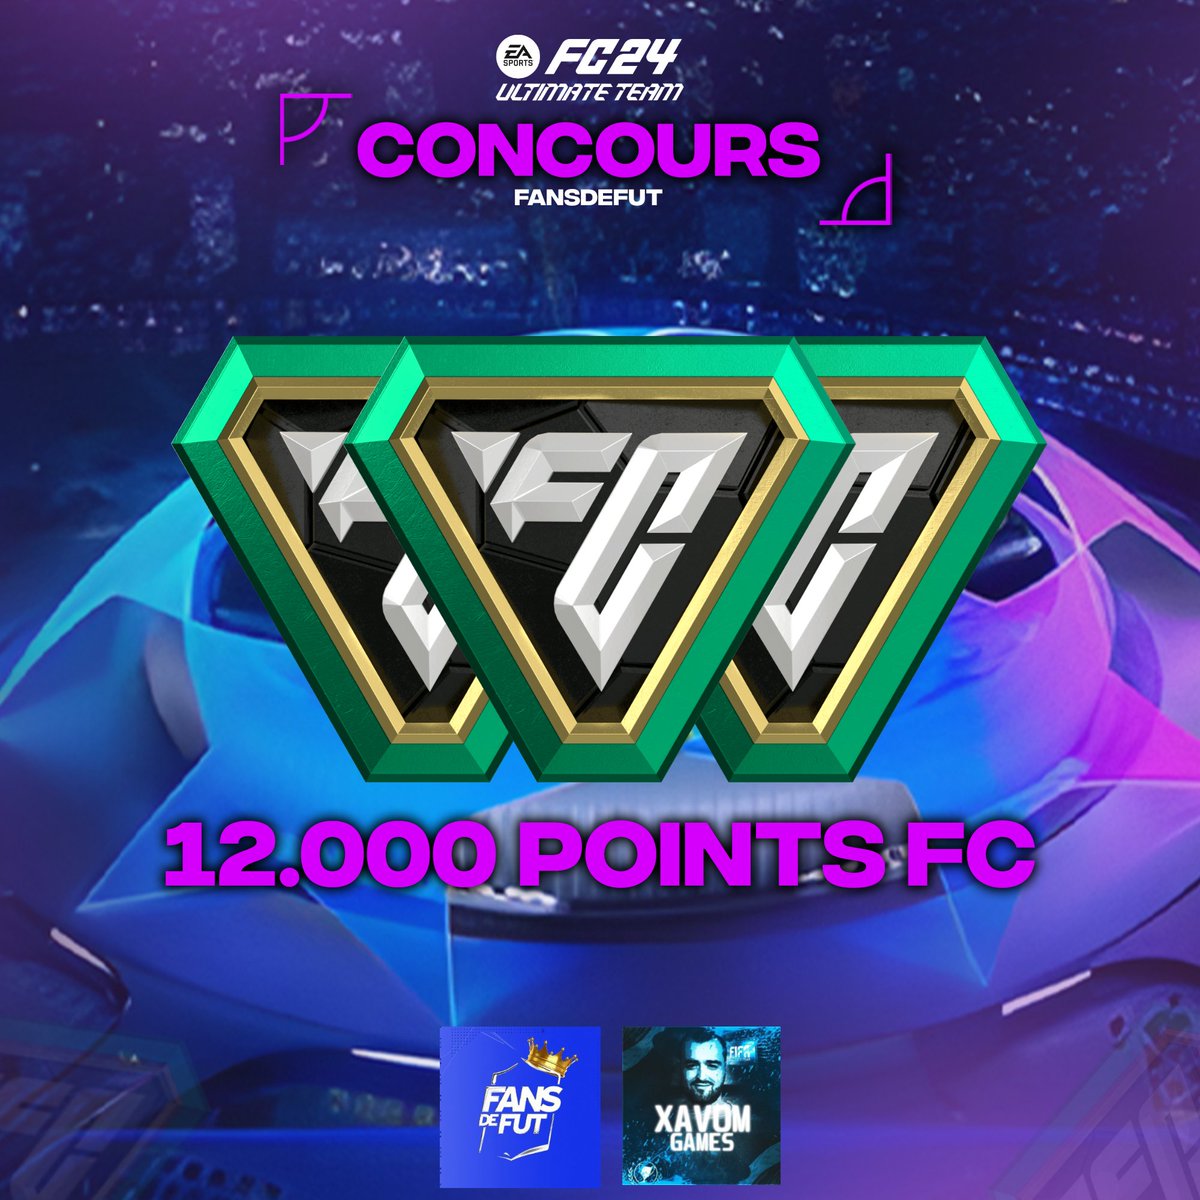 🚨 CONCOURS 100€ DE POINTS FC POUR LES RTTK ET LA SORTIE MONDIALE DU JEU ( 12.000 POINTS FC toutes plateformes ) 🧨🤑 - RT 🔄 - Follow @Xavomgames & @FansdeFUT ✅ - Tirage le 2 octobre ! ⏰